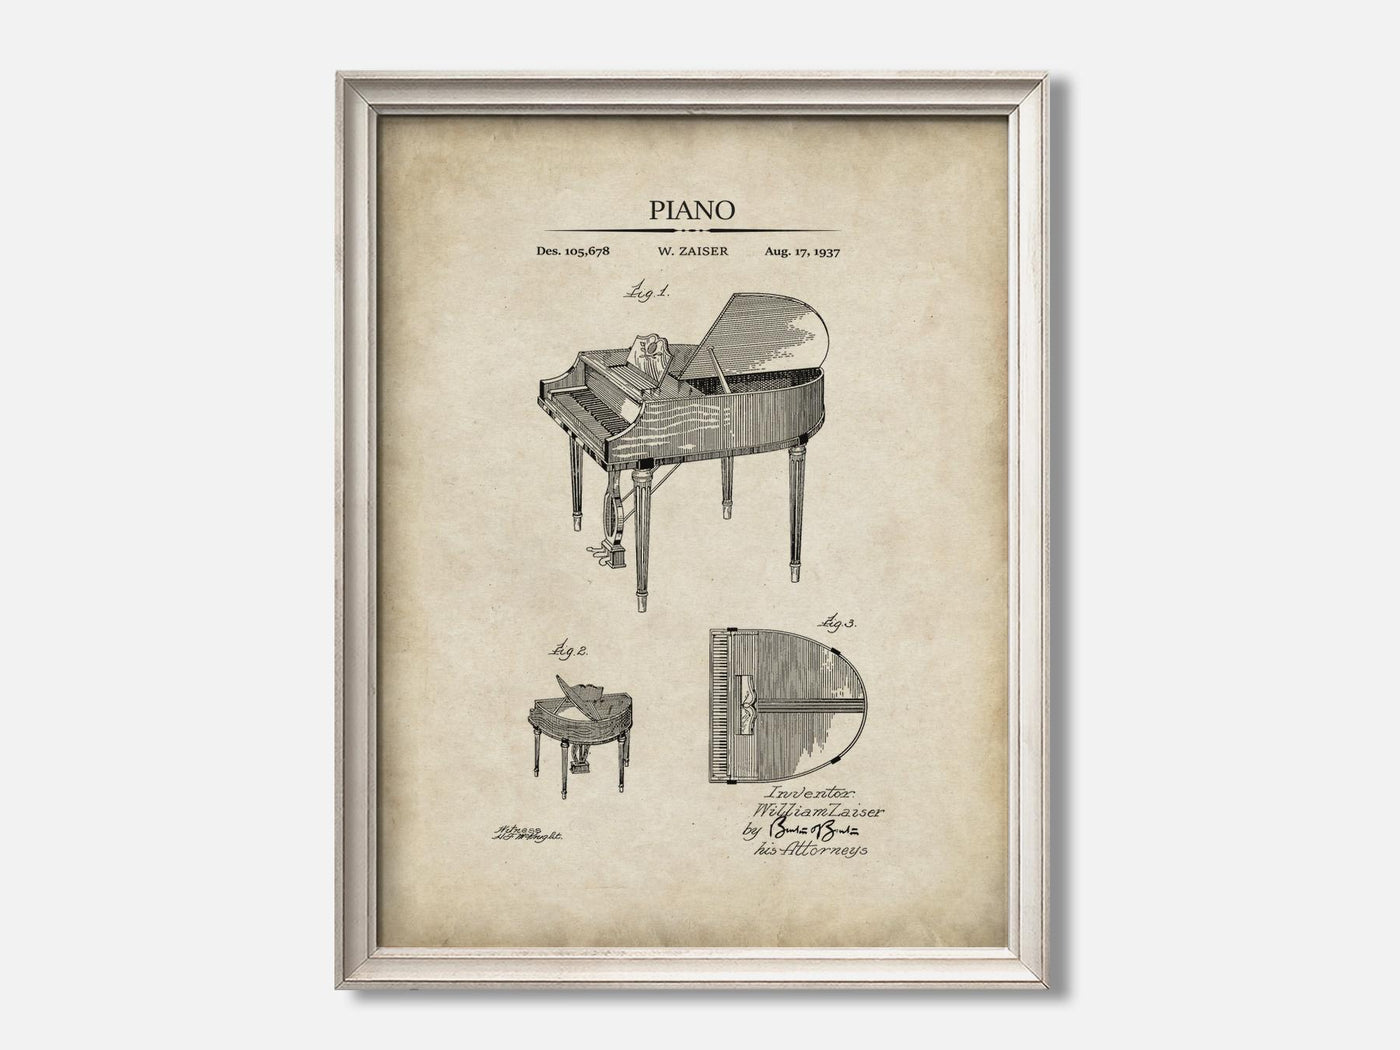 Piano Patent Art Print mockup - A_t10117.1-V1-PC_F+O-SS_1-PS_5x7-C_par variant